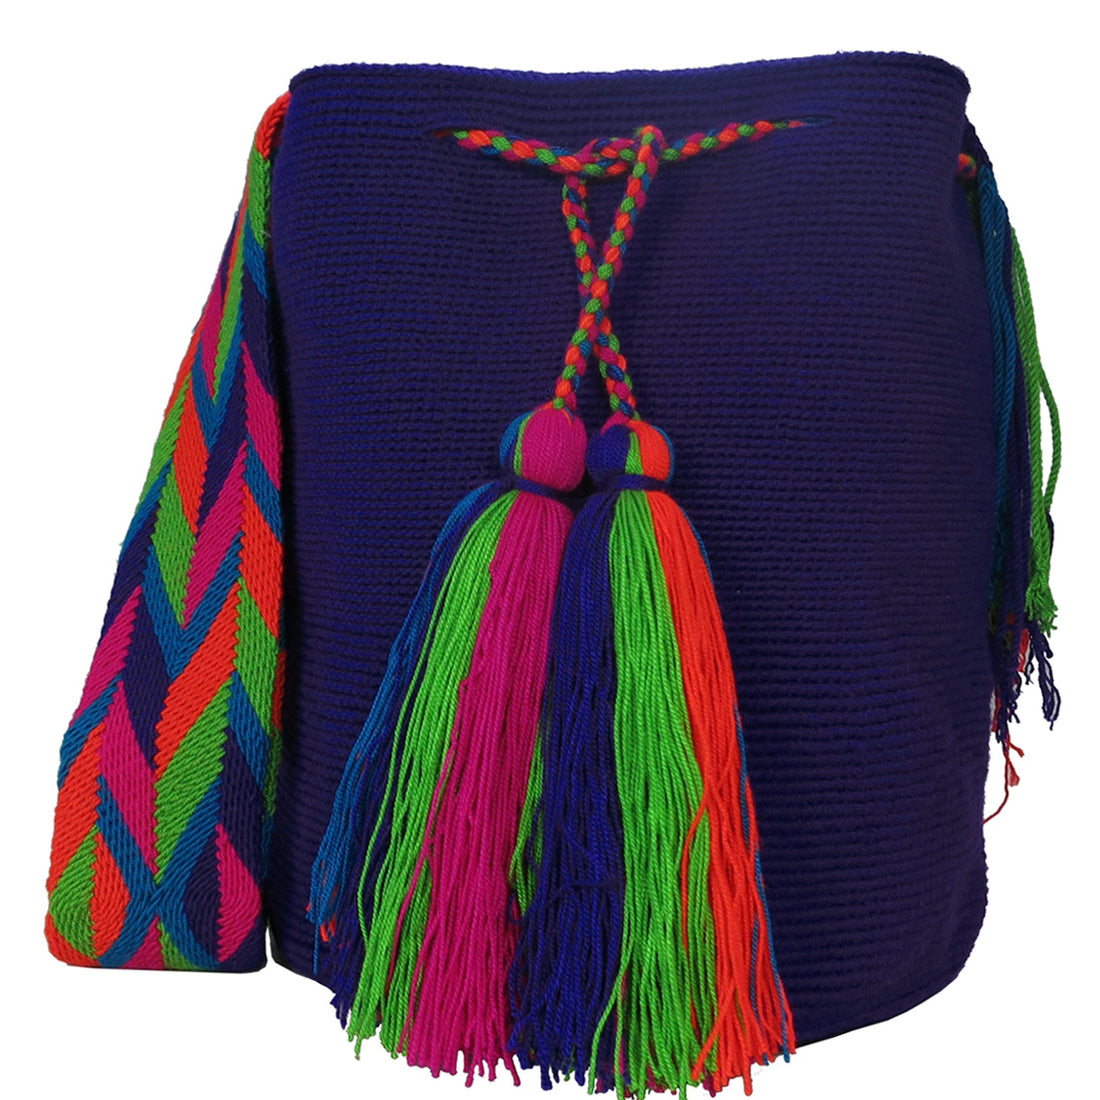 The Bocagrande Wayuu Mochila Bag